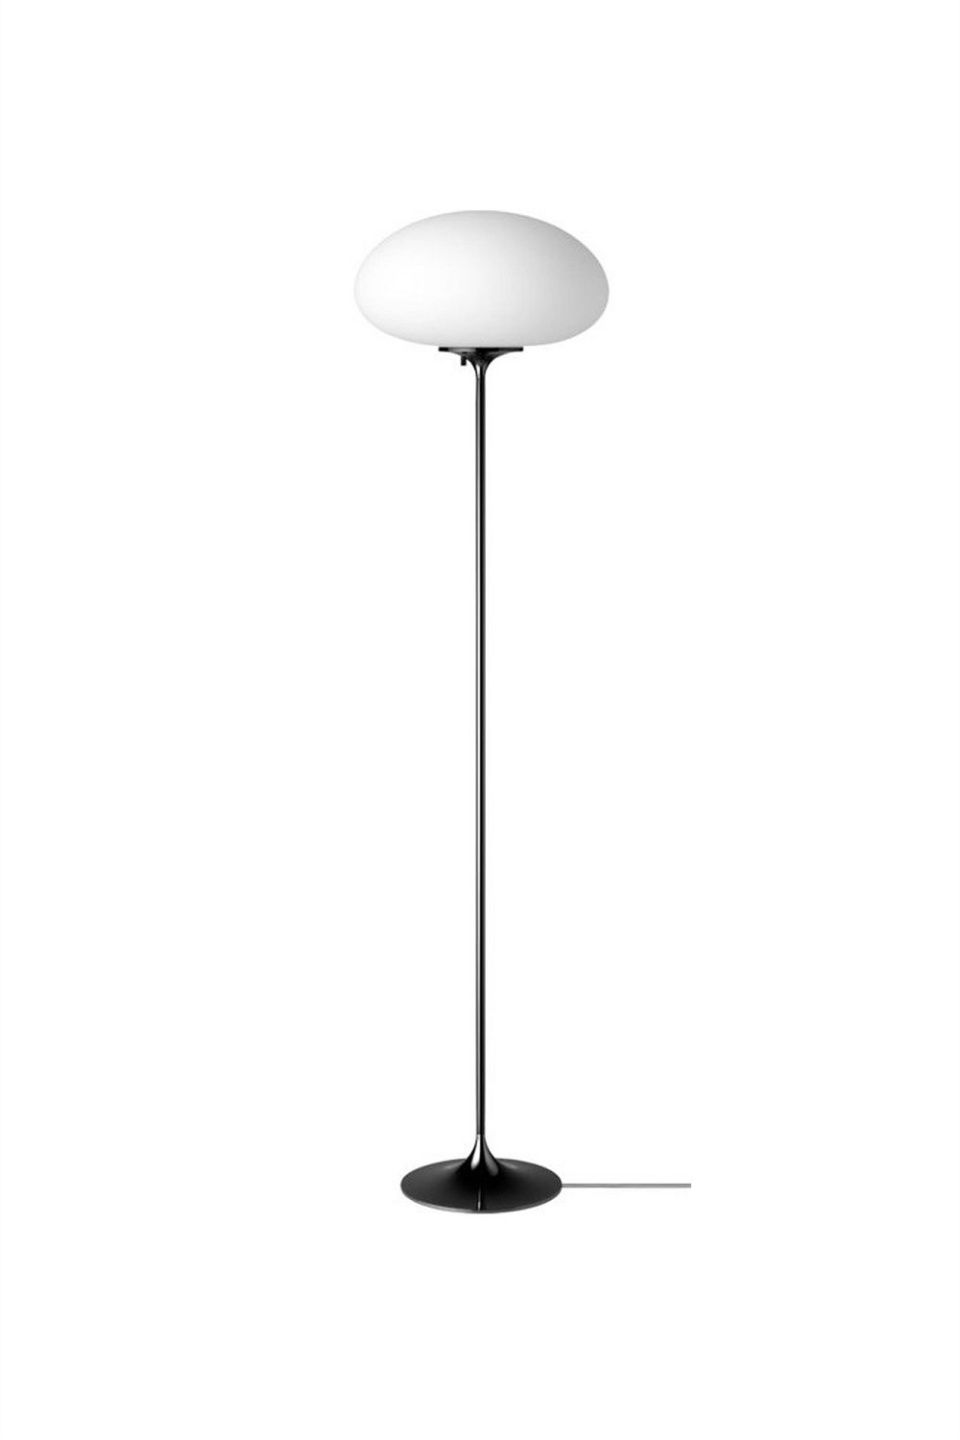 Торшер Stemlite Floor Lamp Black Chrome 150 см